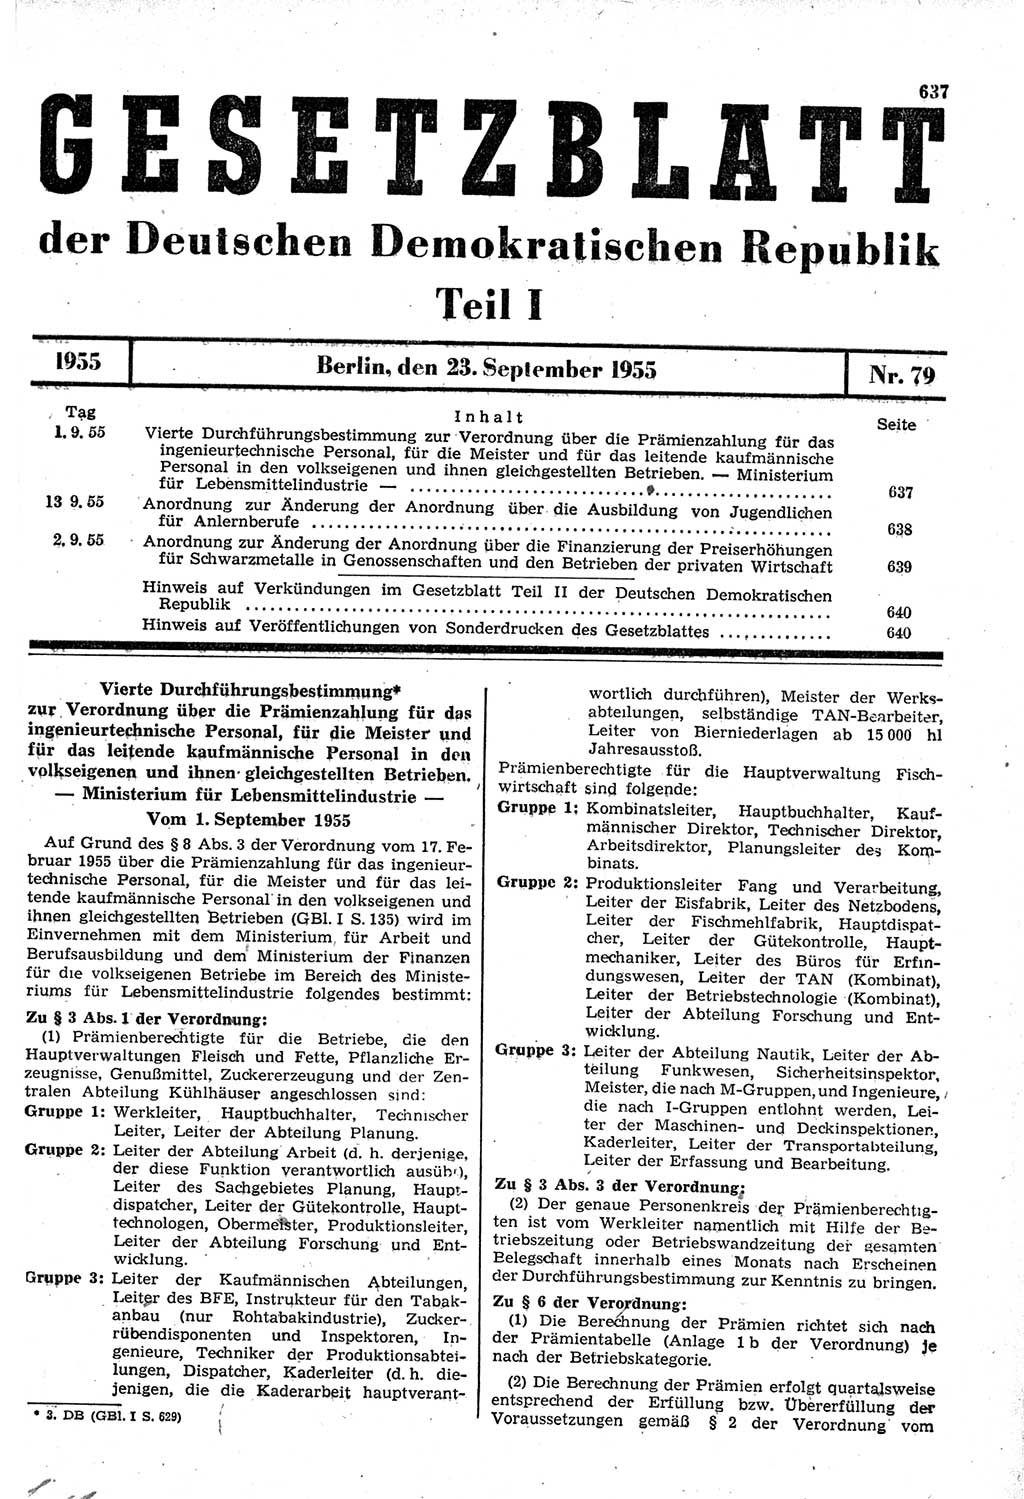 Gesetzblatt (GBl.) der Deutschen Demokratischen Republik (DDR) Teil Ⅰ 1955, Seite 637 (GBl. DDR Ⅰ 1955, S. 637)